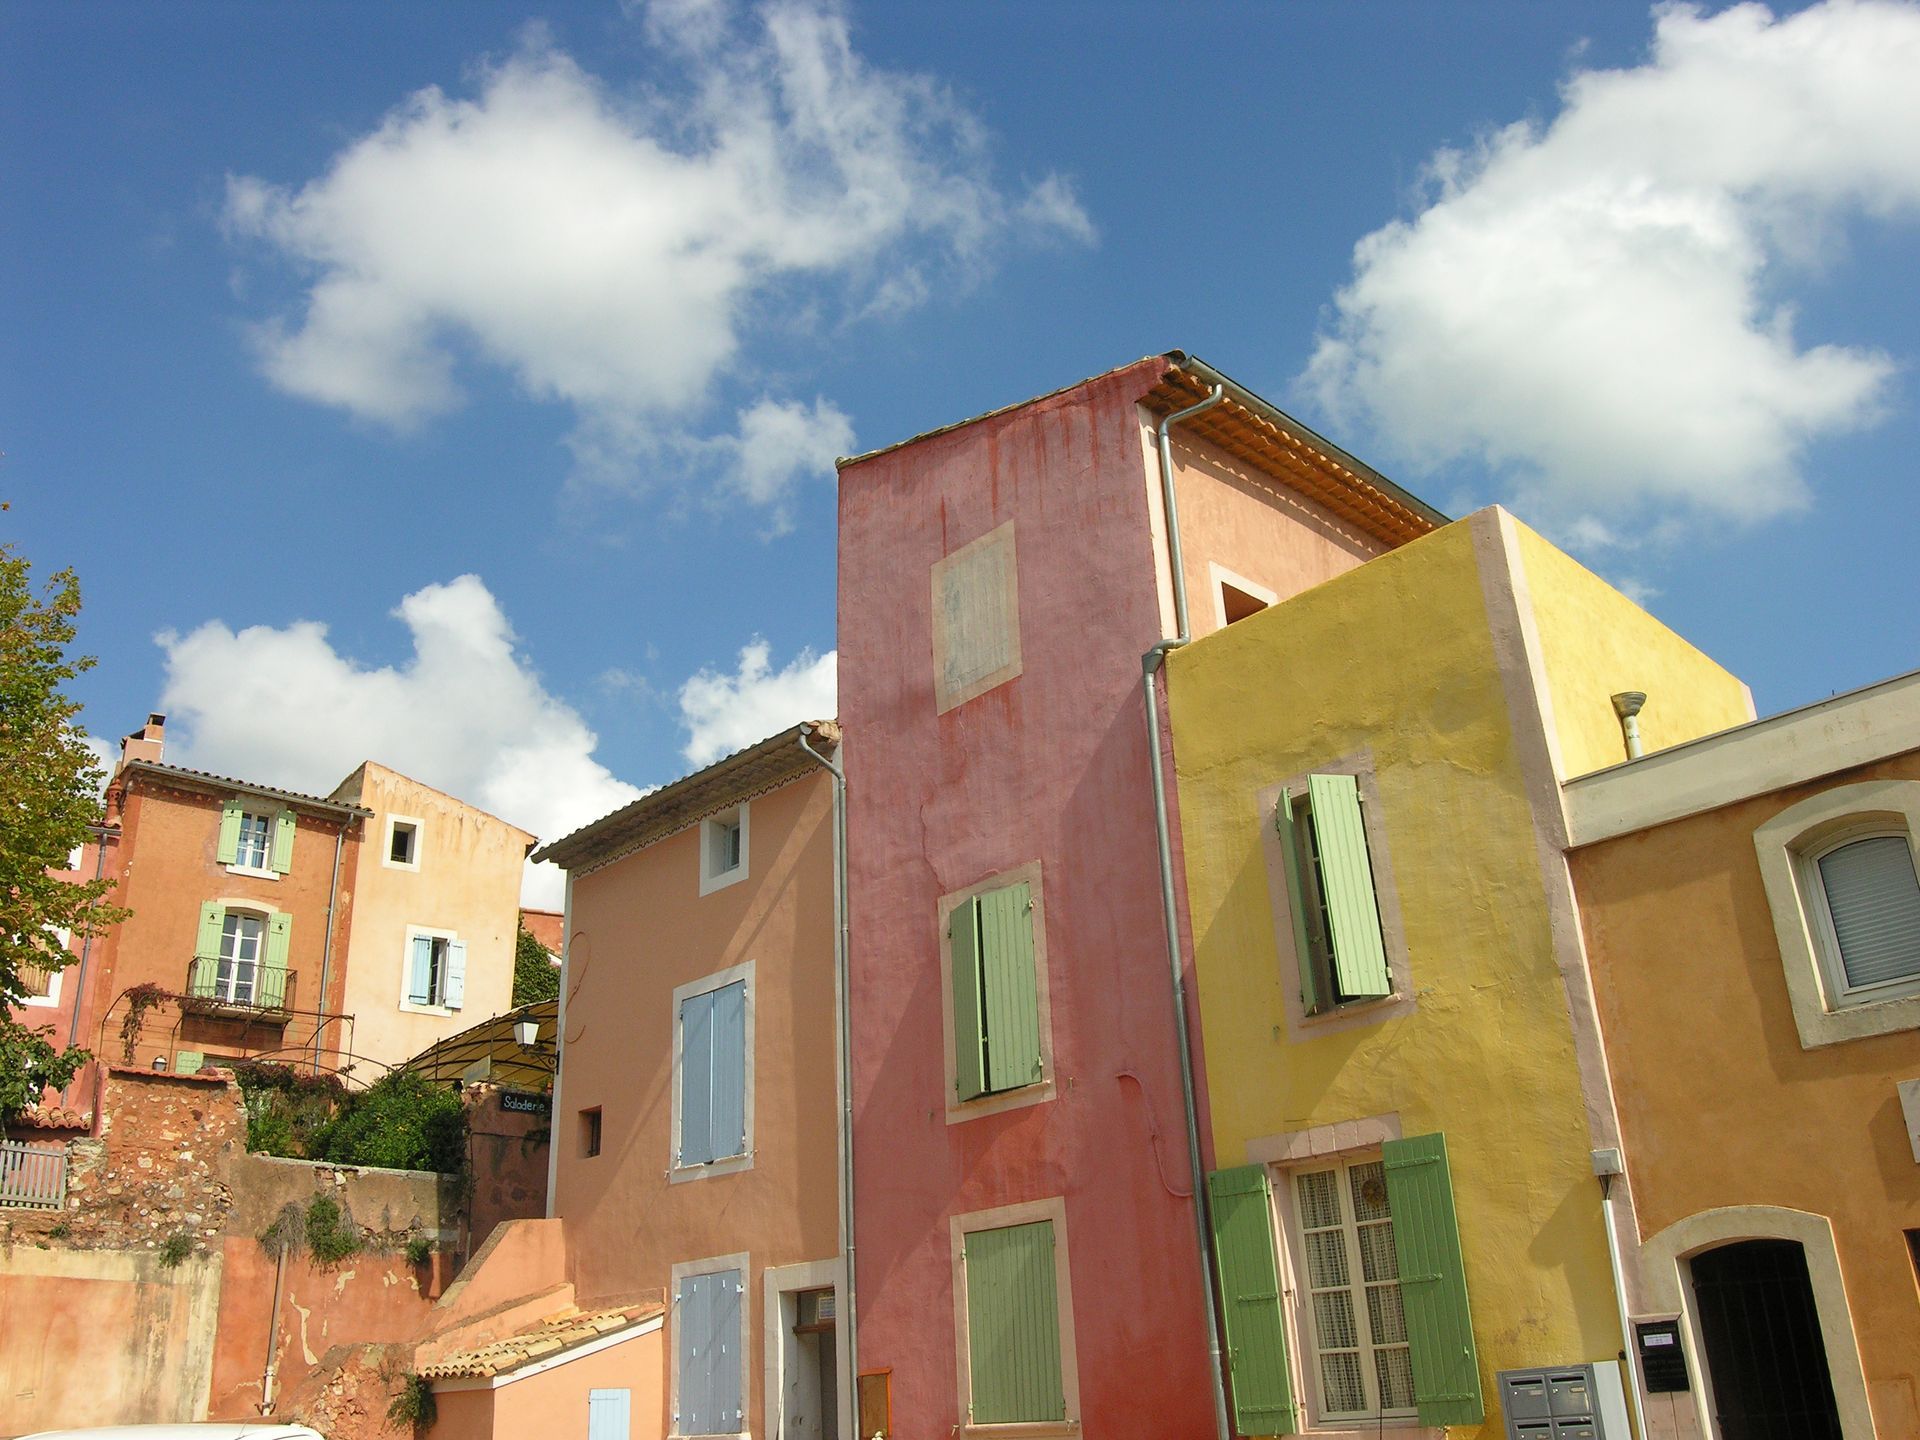 Hautes maisons colorées